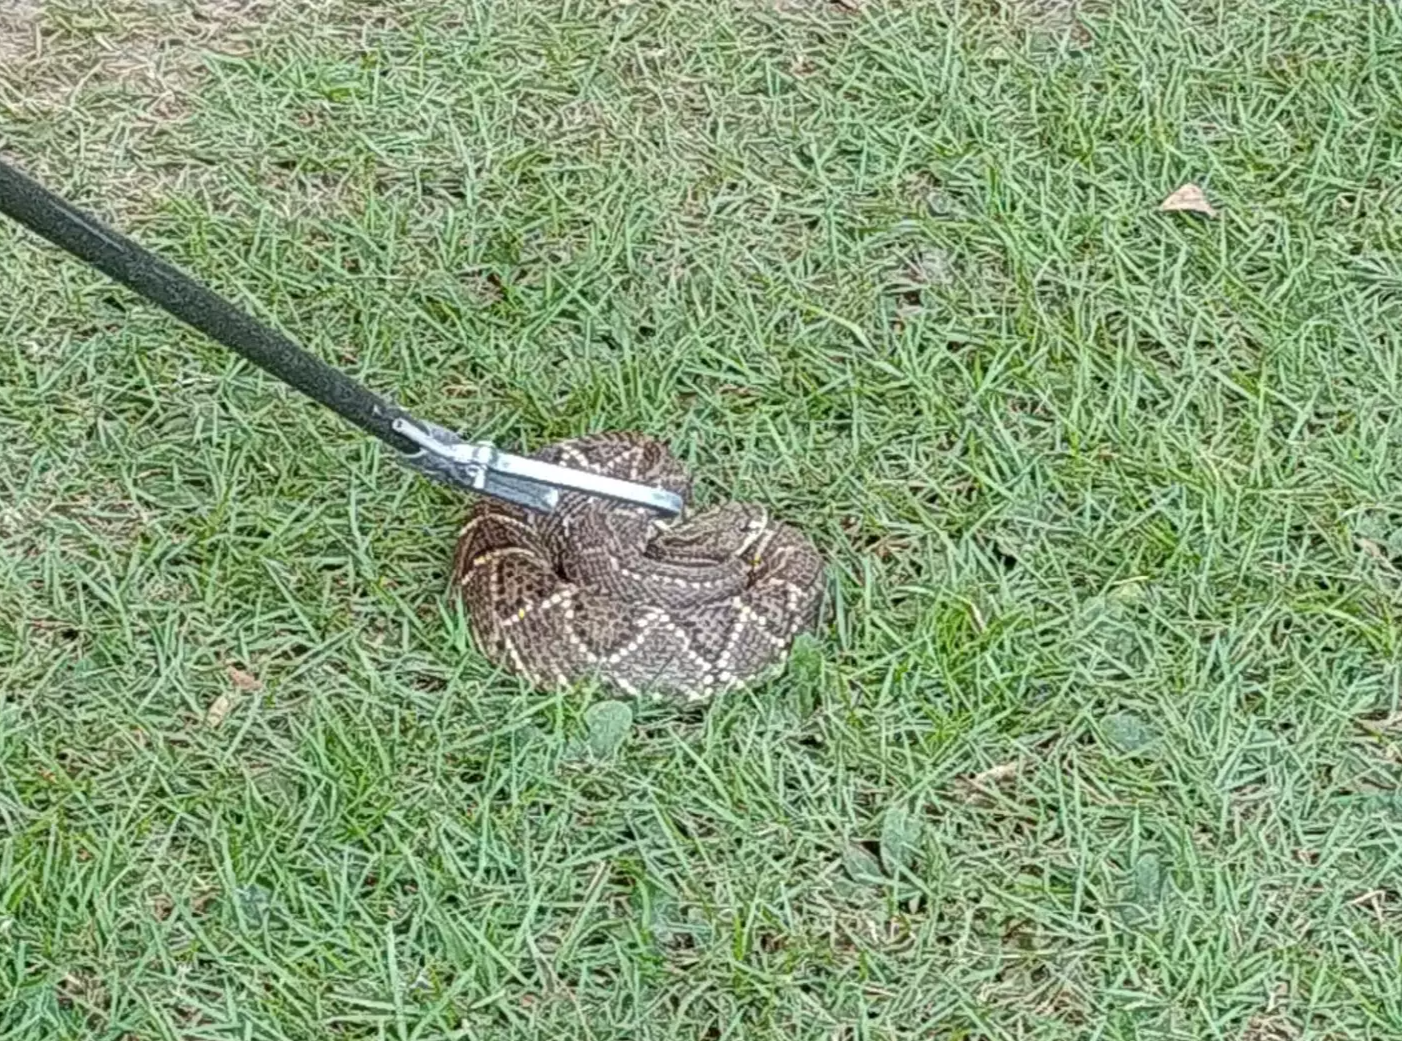 Cobra cascavel é capturada em jardim de hotel em Bonito